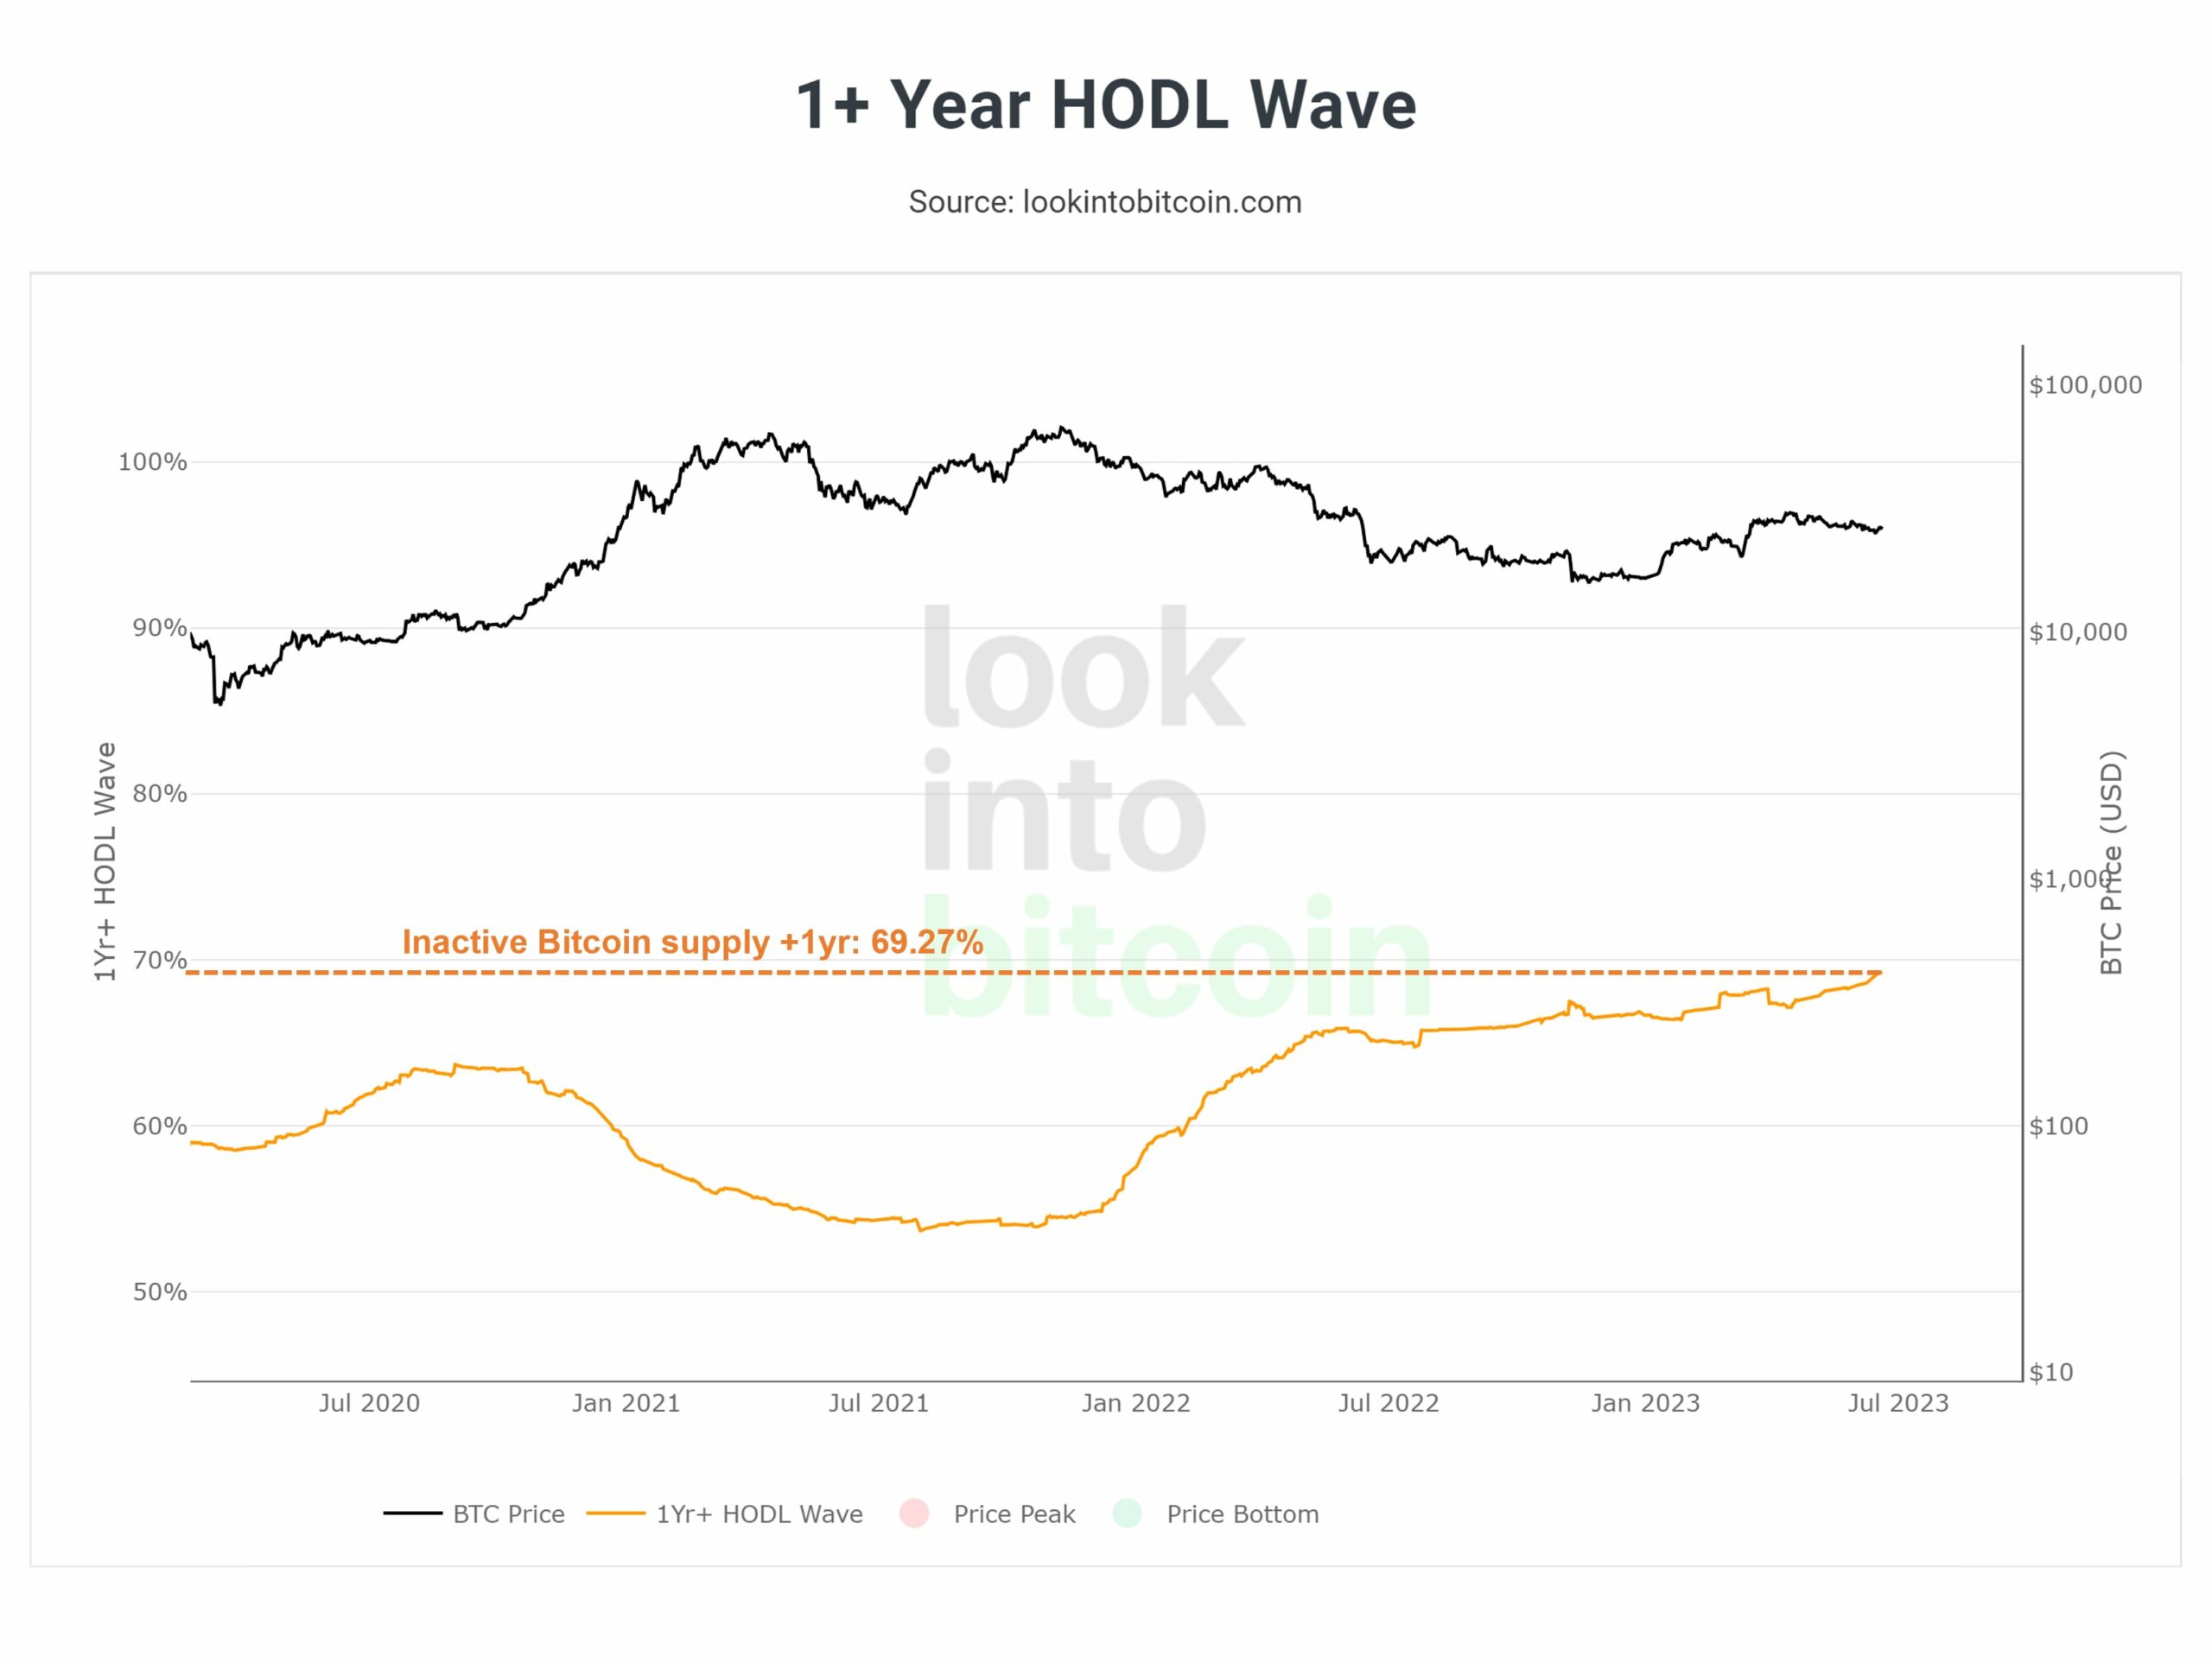 Bitcoin 1+ year HODL wave